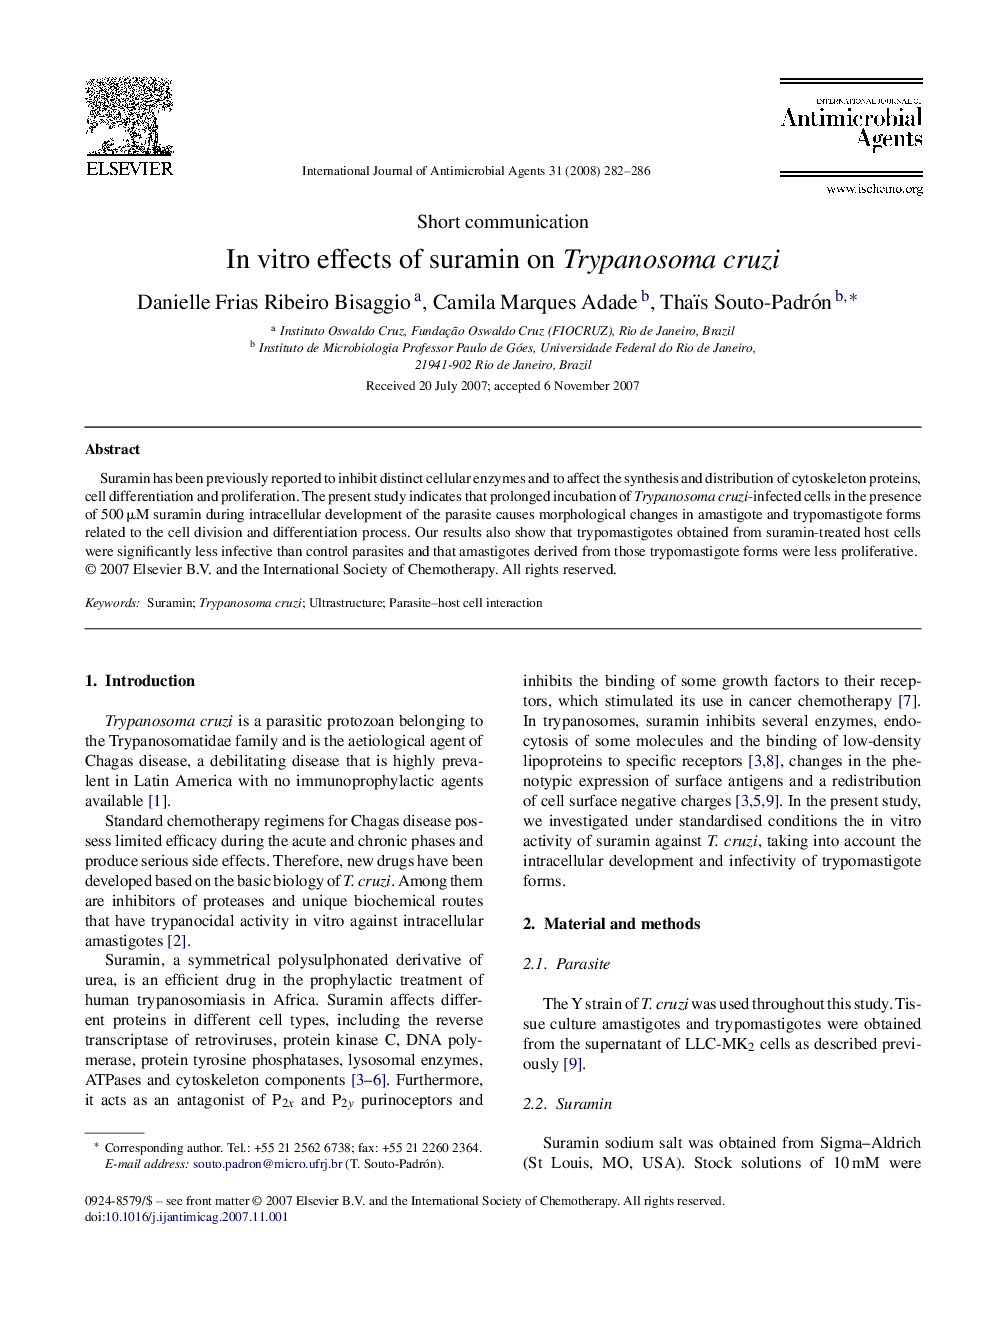 In vitro effects of suramin on Trypanosoma cruzi